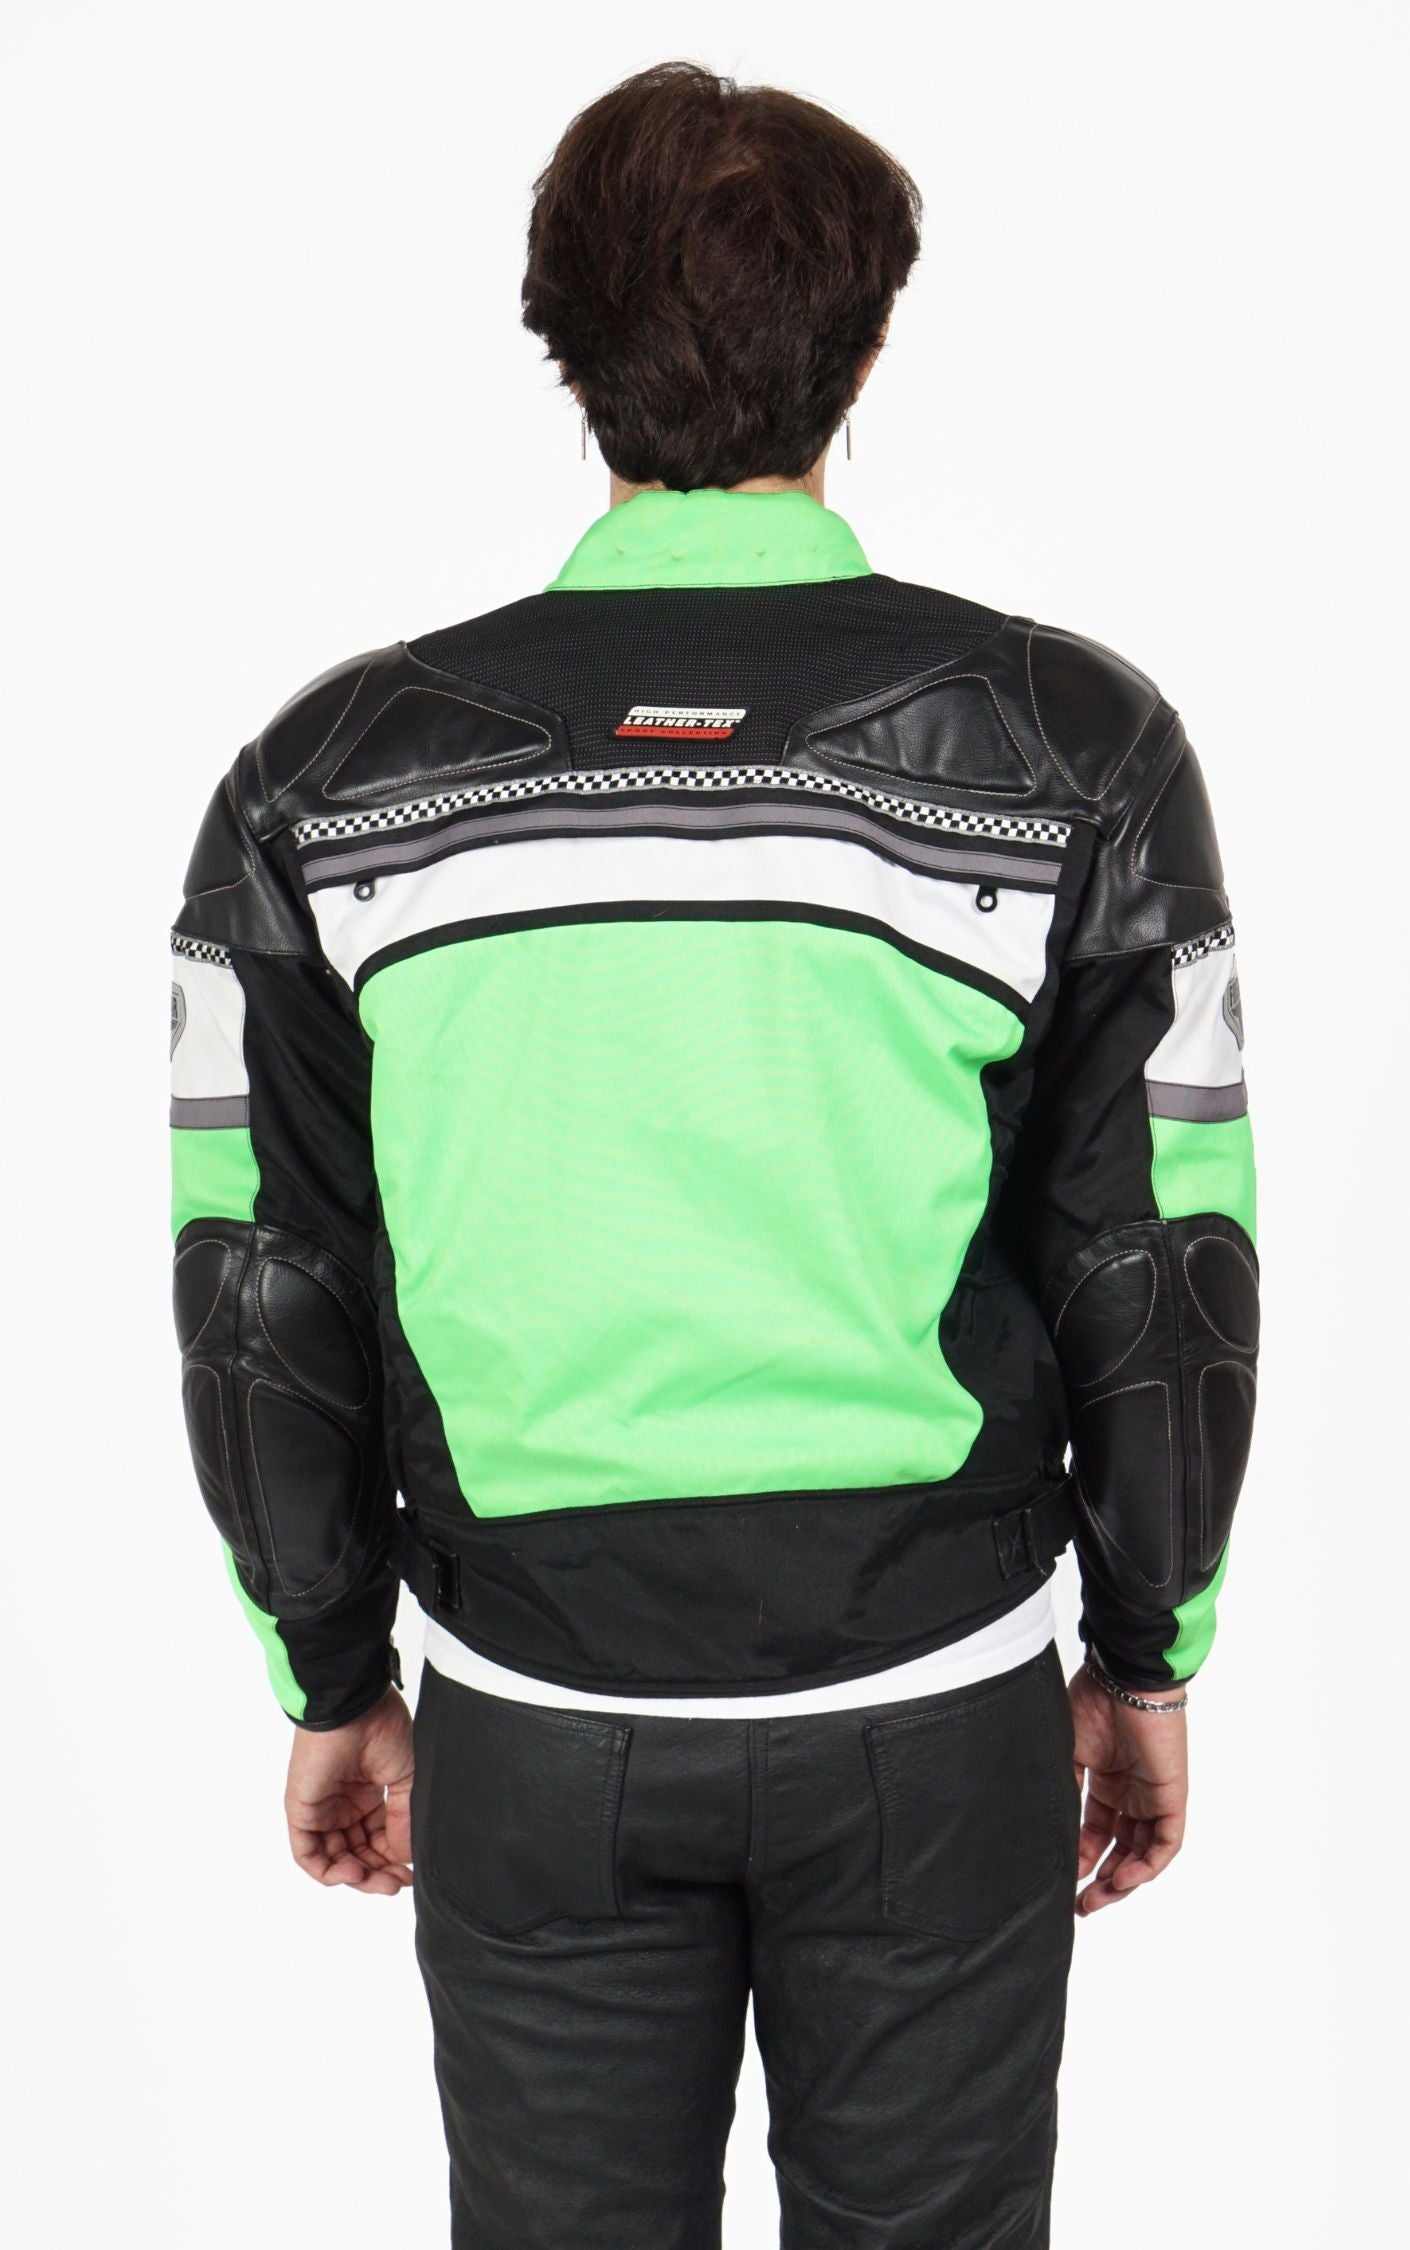 FIRSTGEAR Neon Motorcycle Racing Biker Jacket resellum